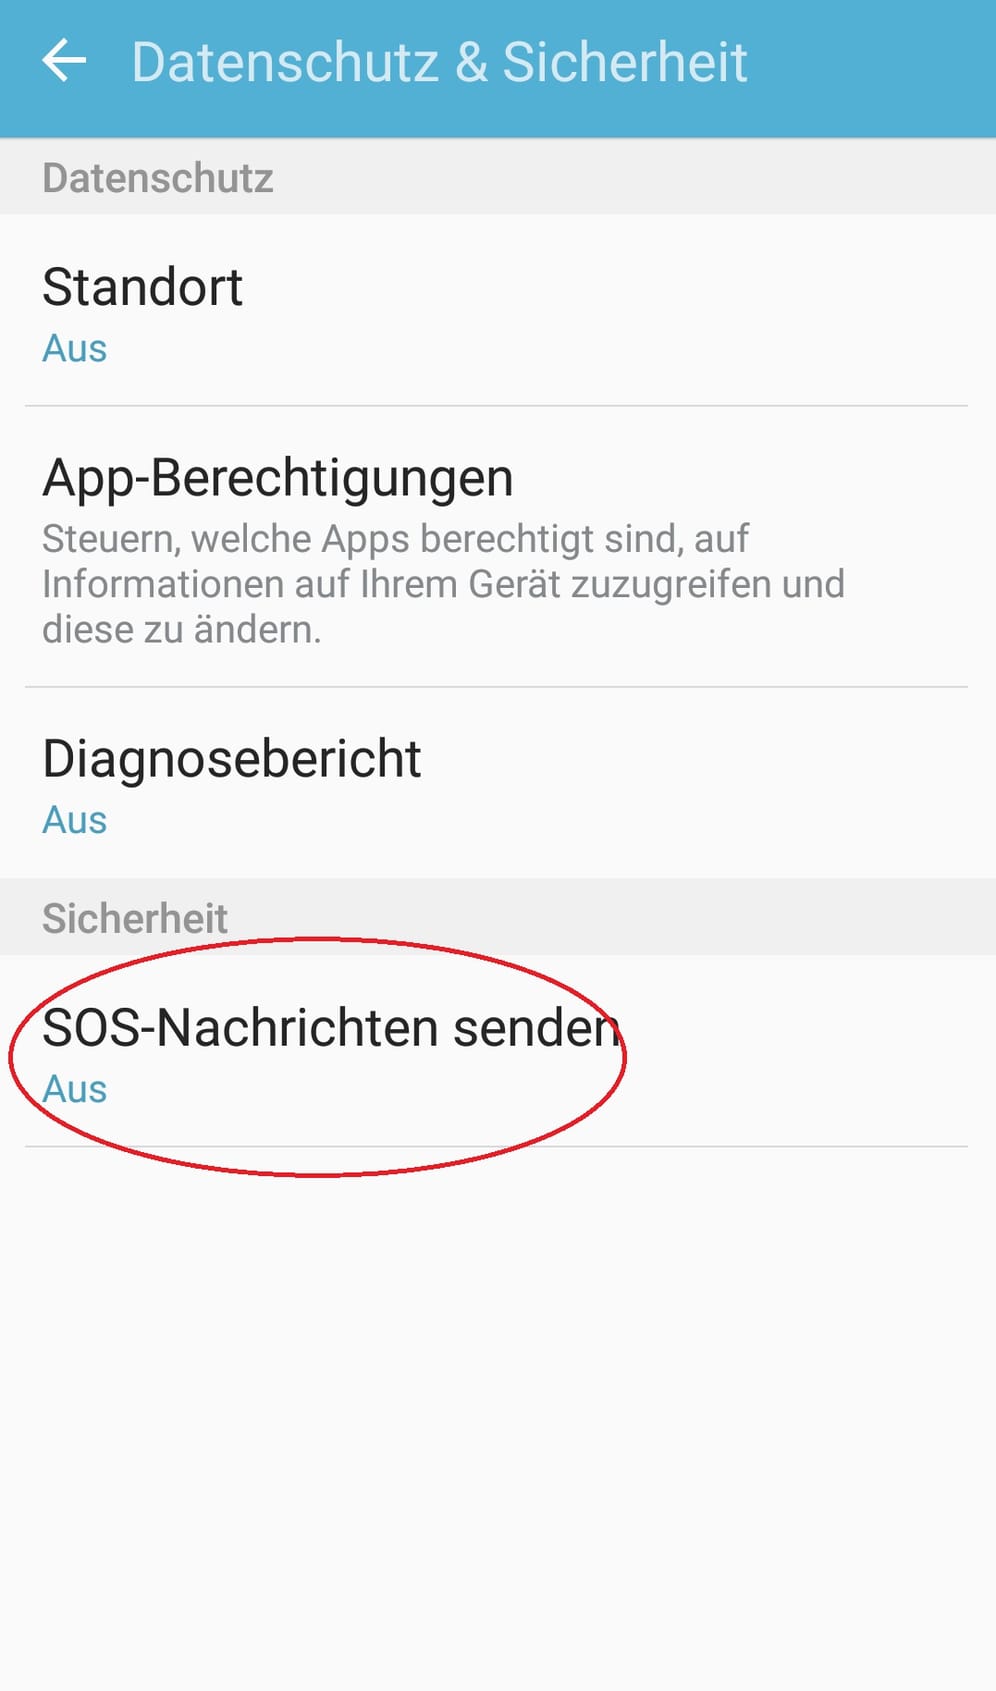 In "Datenschutz & Sicherheit" wählen Sie "SOS-Nachrichten senden".